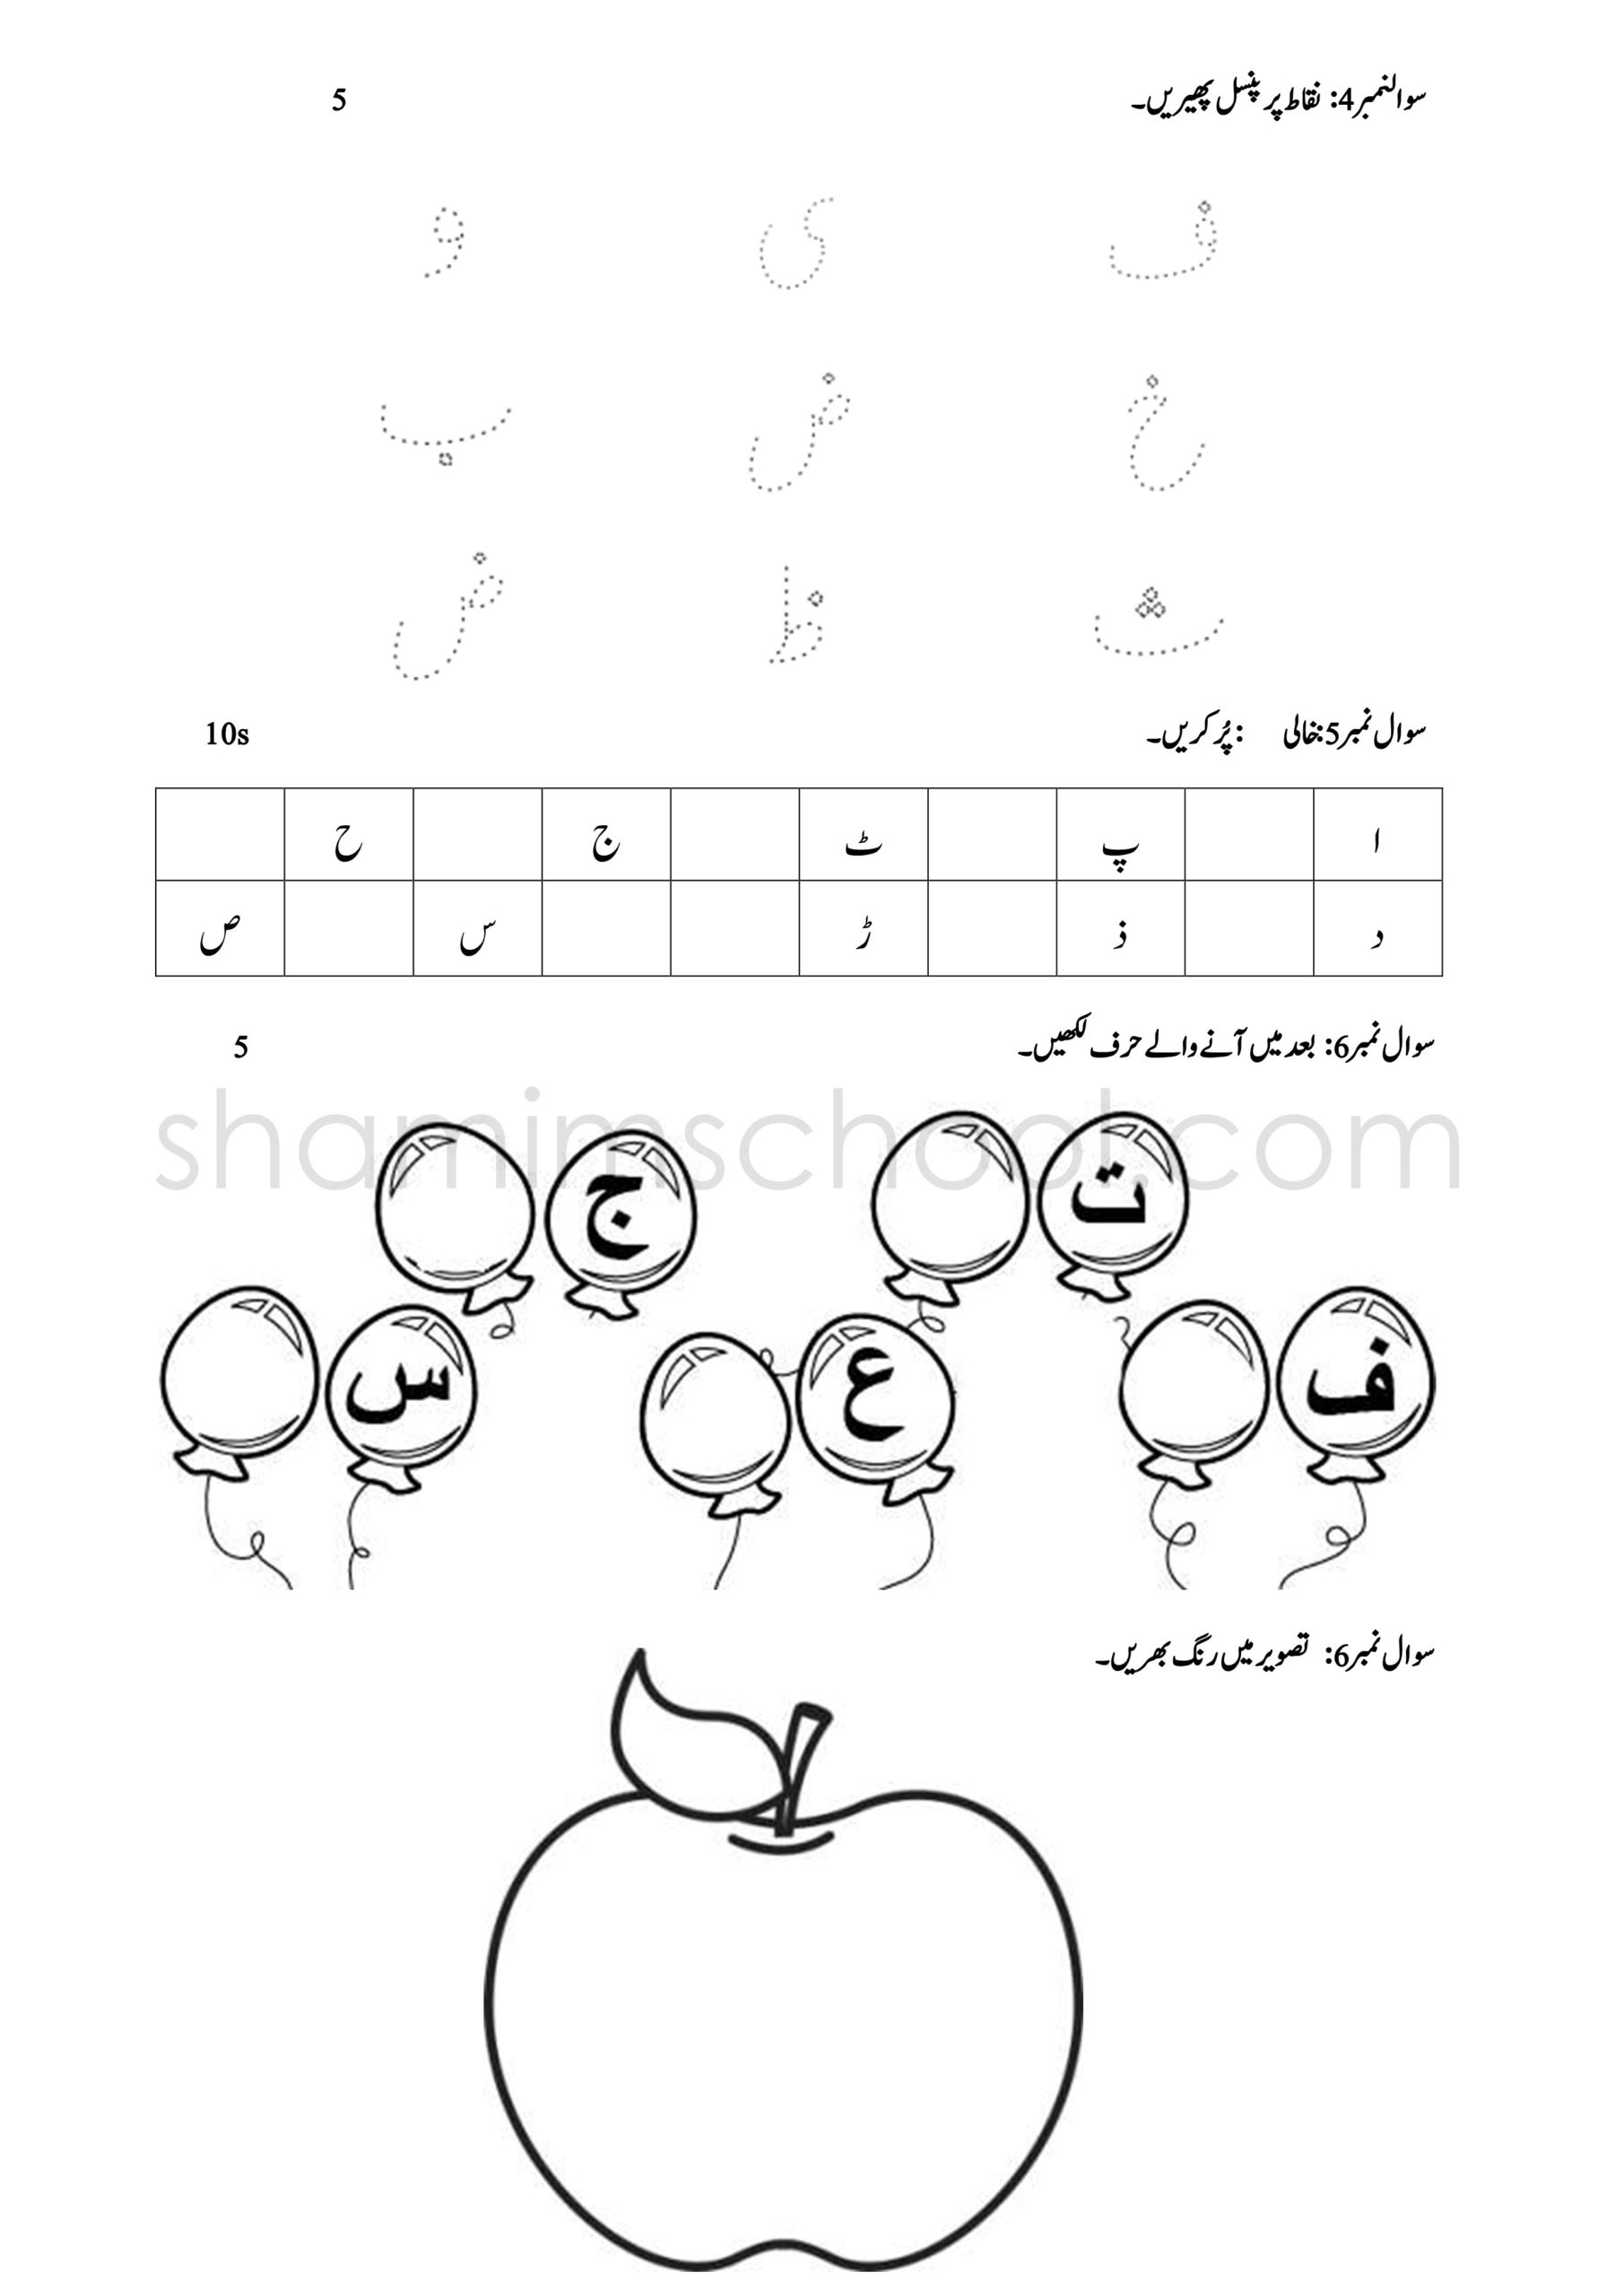 urdu-worksheets-for-preschool-alphabet-coloring-pages-alphabet-writing-worksheets-for-playgroup